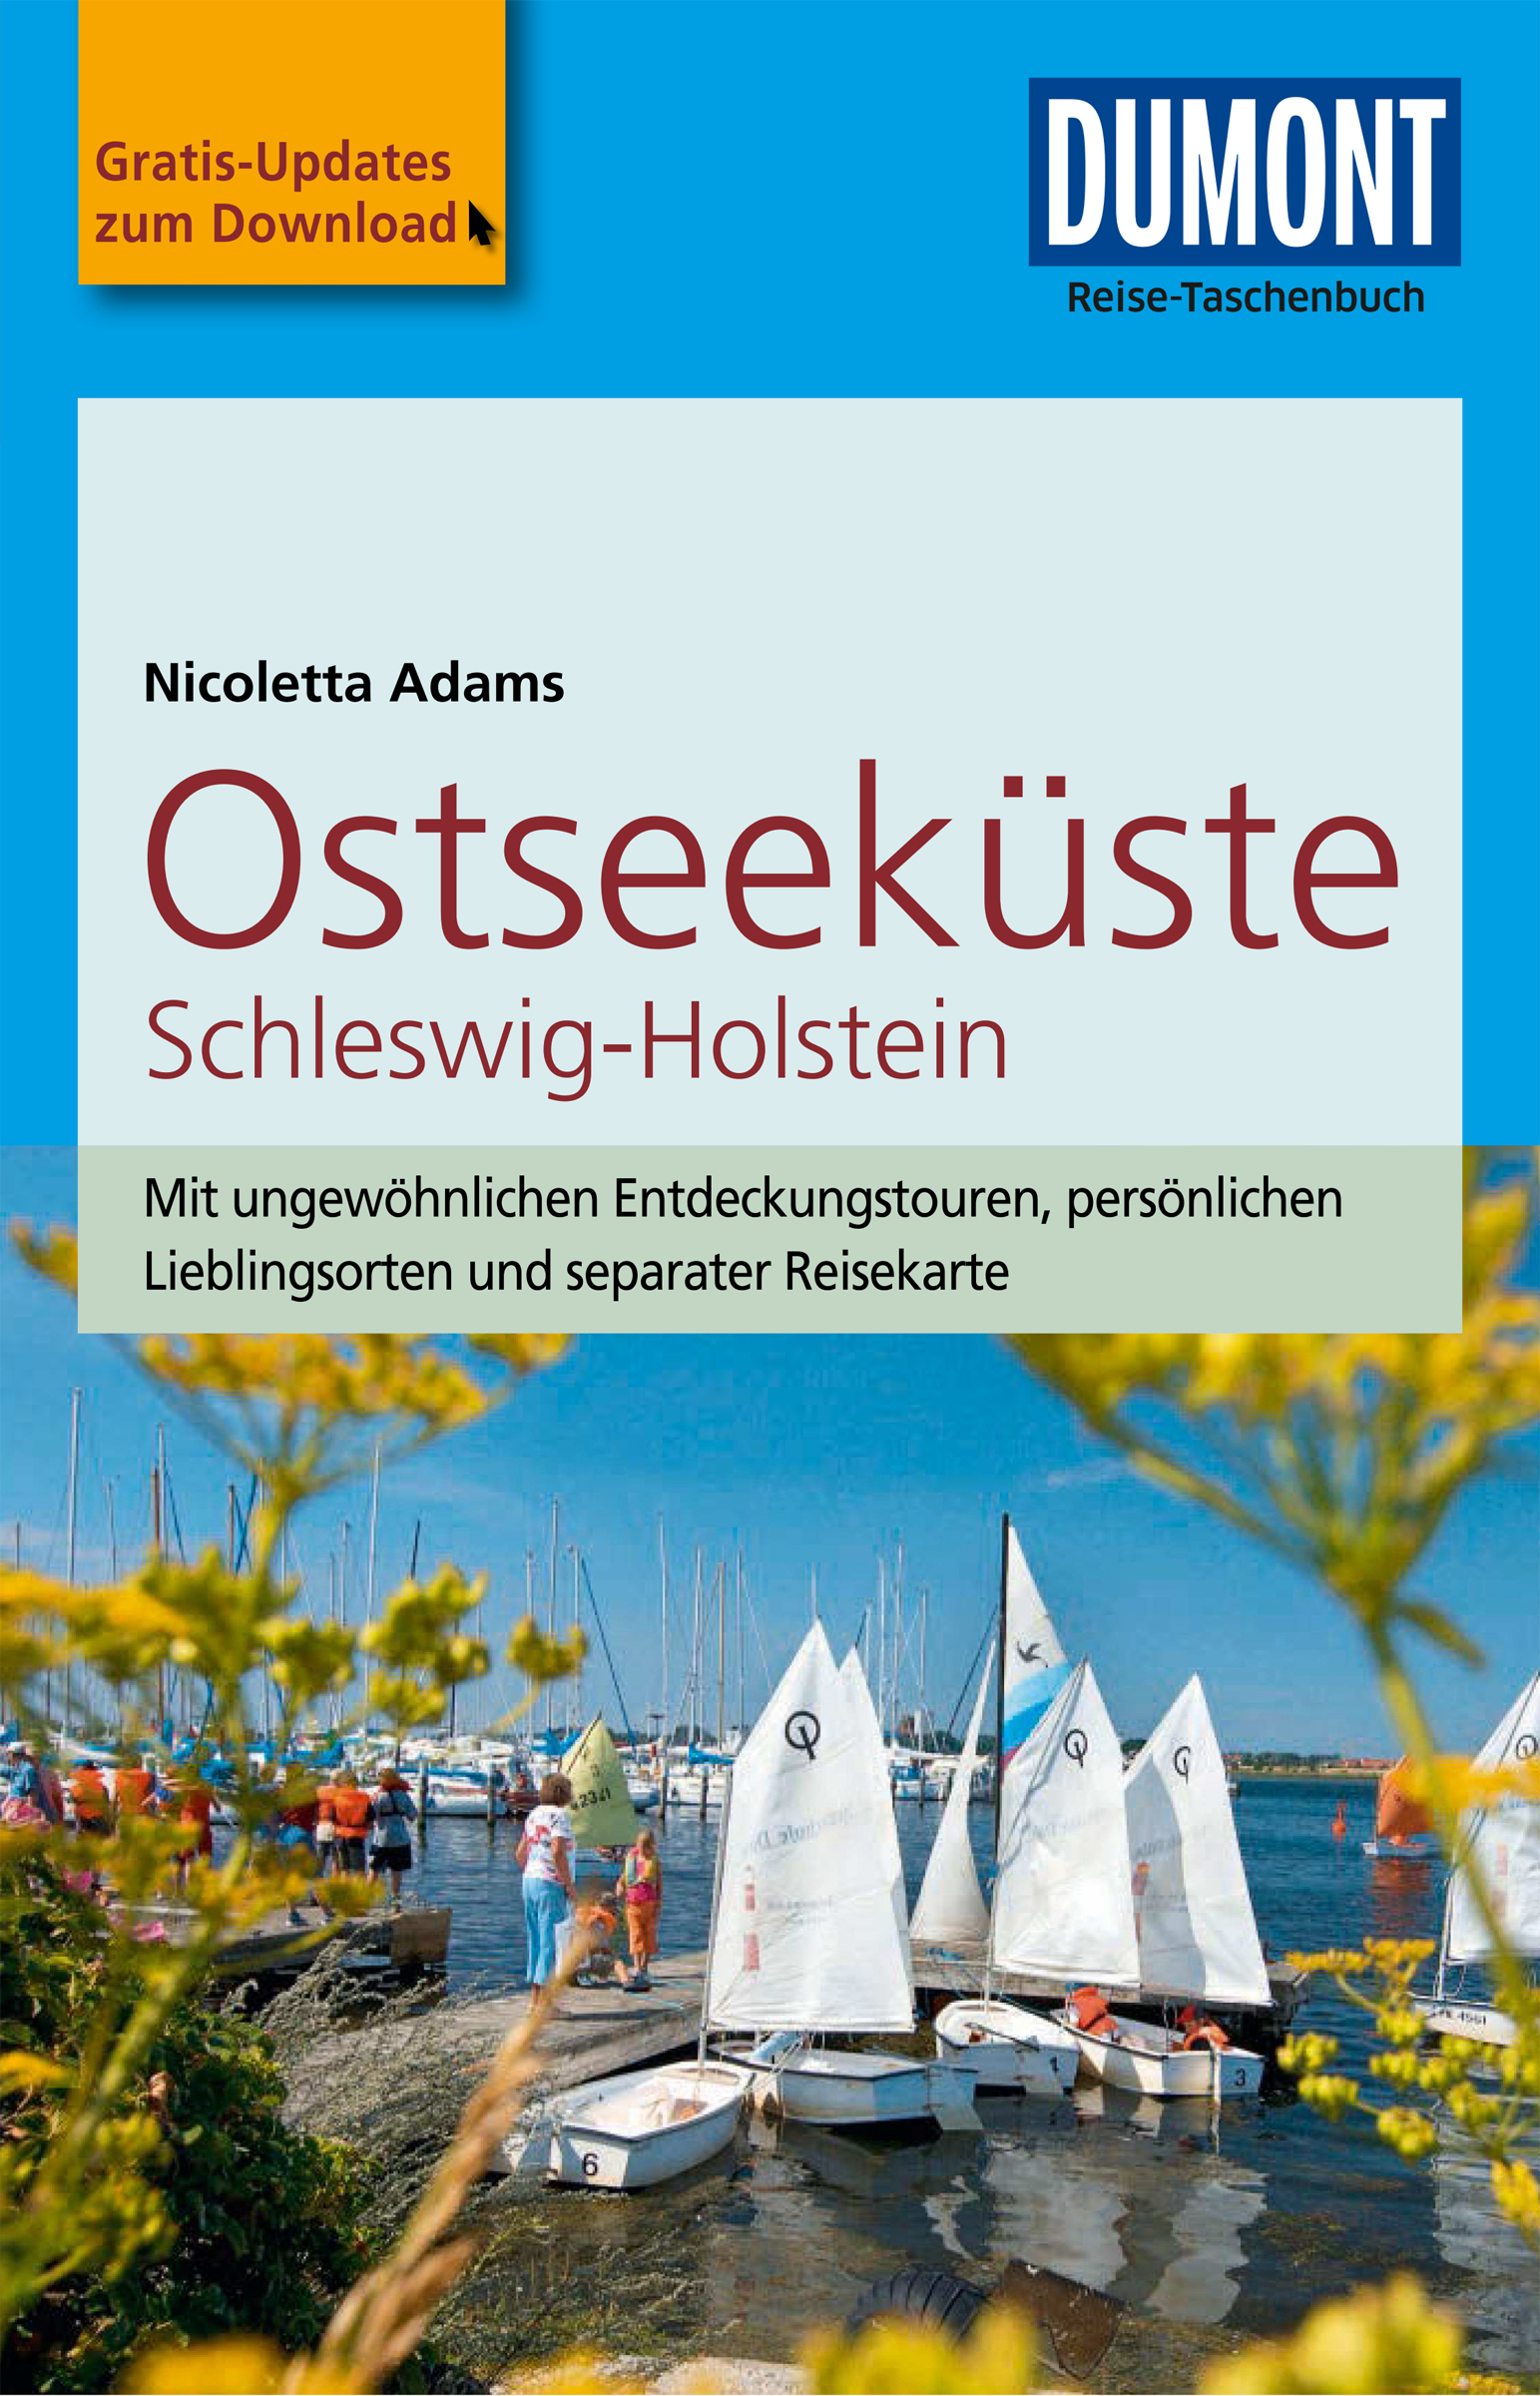 MAIRDUMONT Reiseführer Ostseeküste Schleswig-Holstein